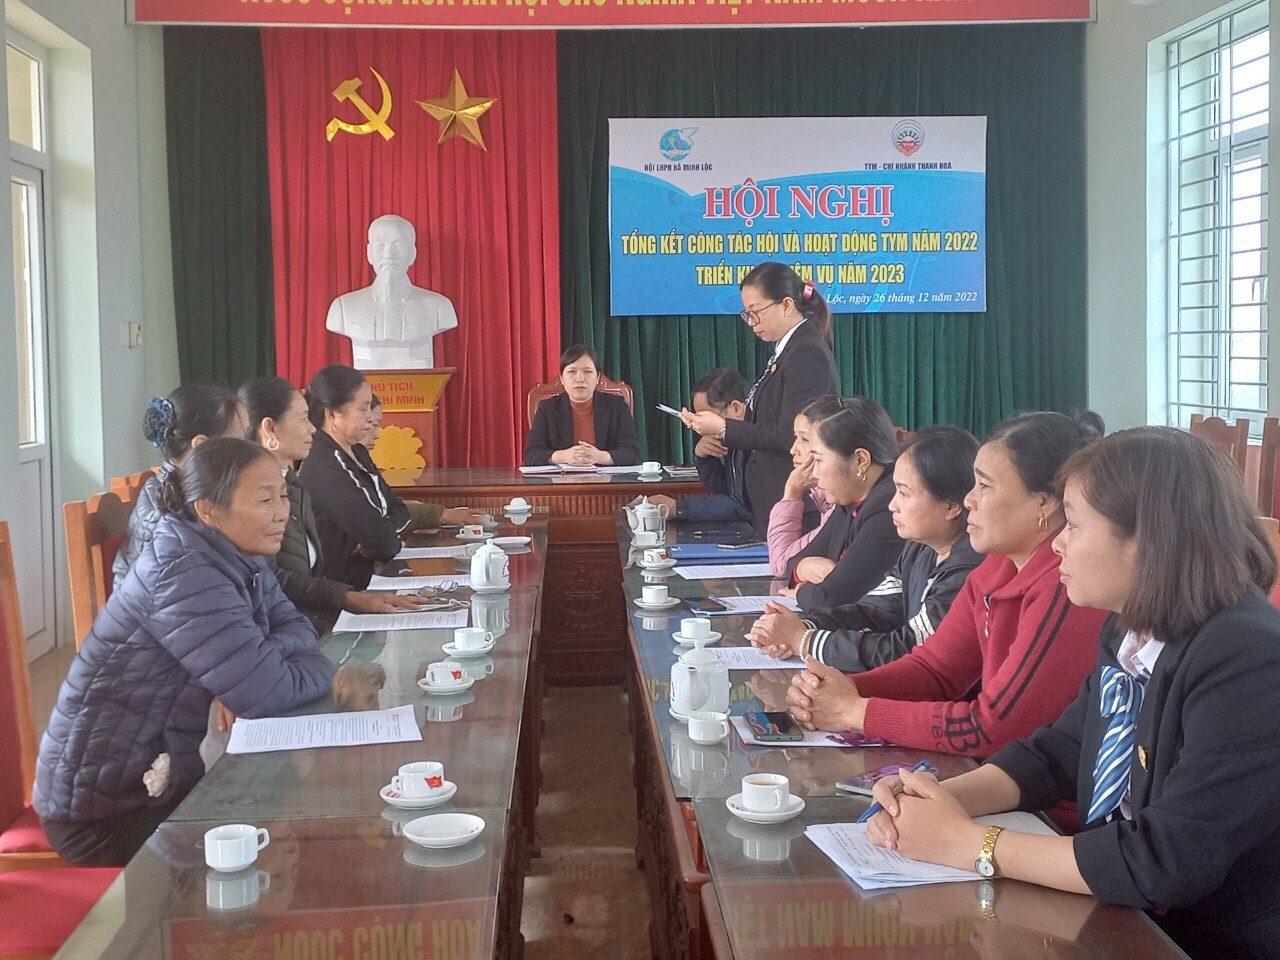 Hội phụ nữ xã Minh lộc tổ chức hội nghị tổng kết công tác hội và hoạt động Tym năm 2022 và triển khai nhiệm vụ năm 2023